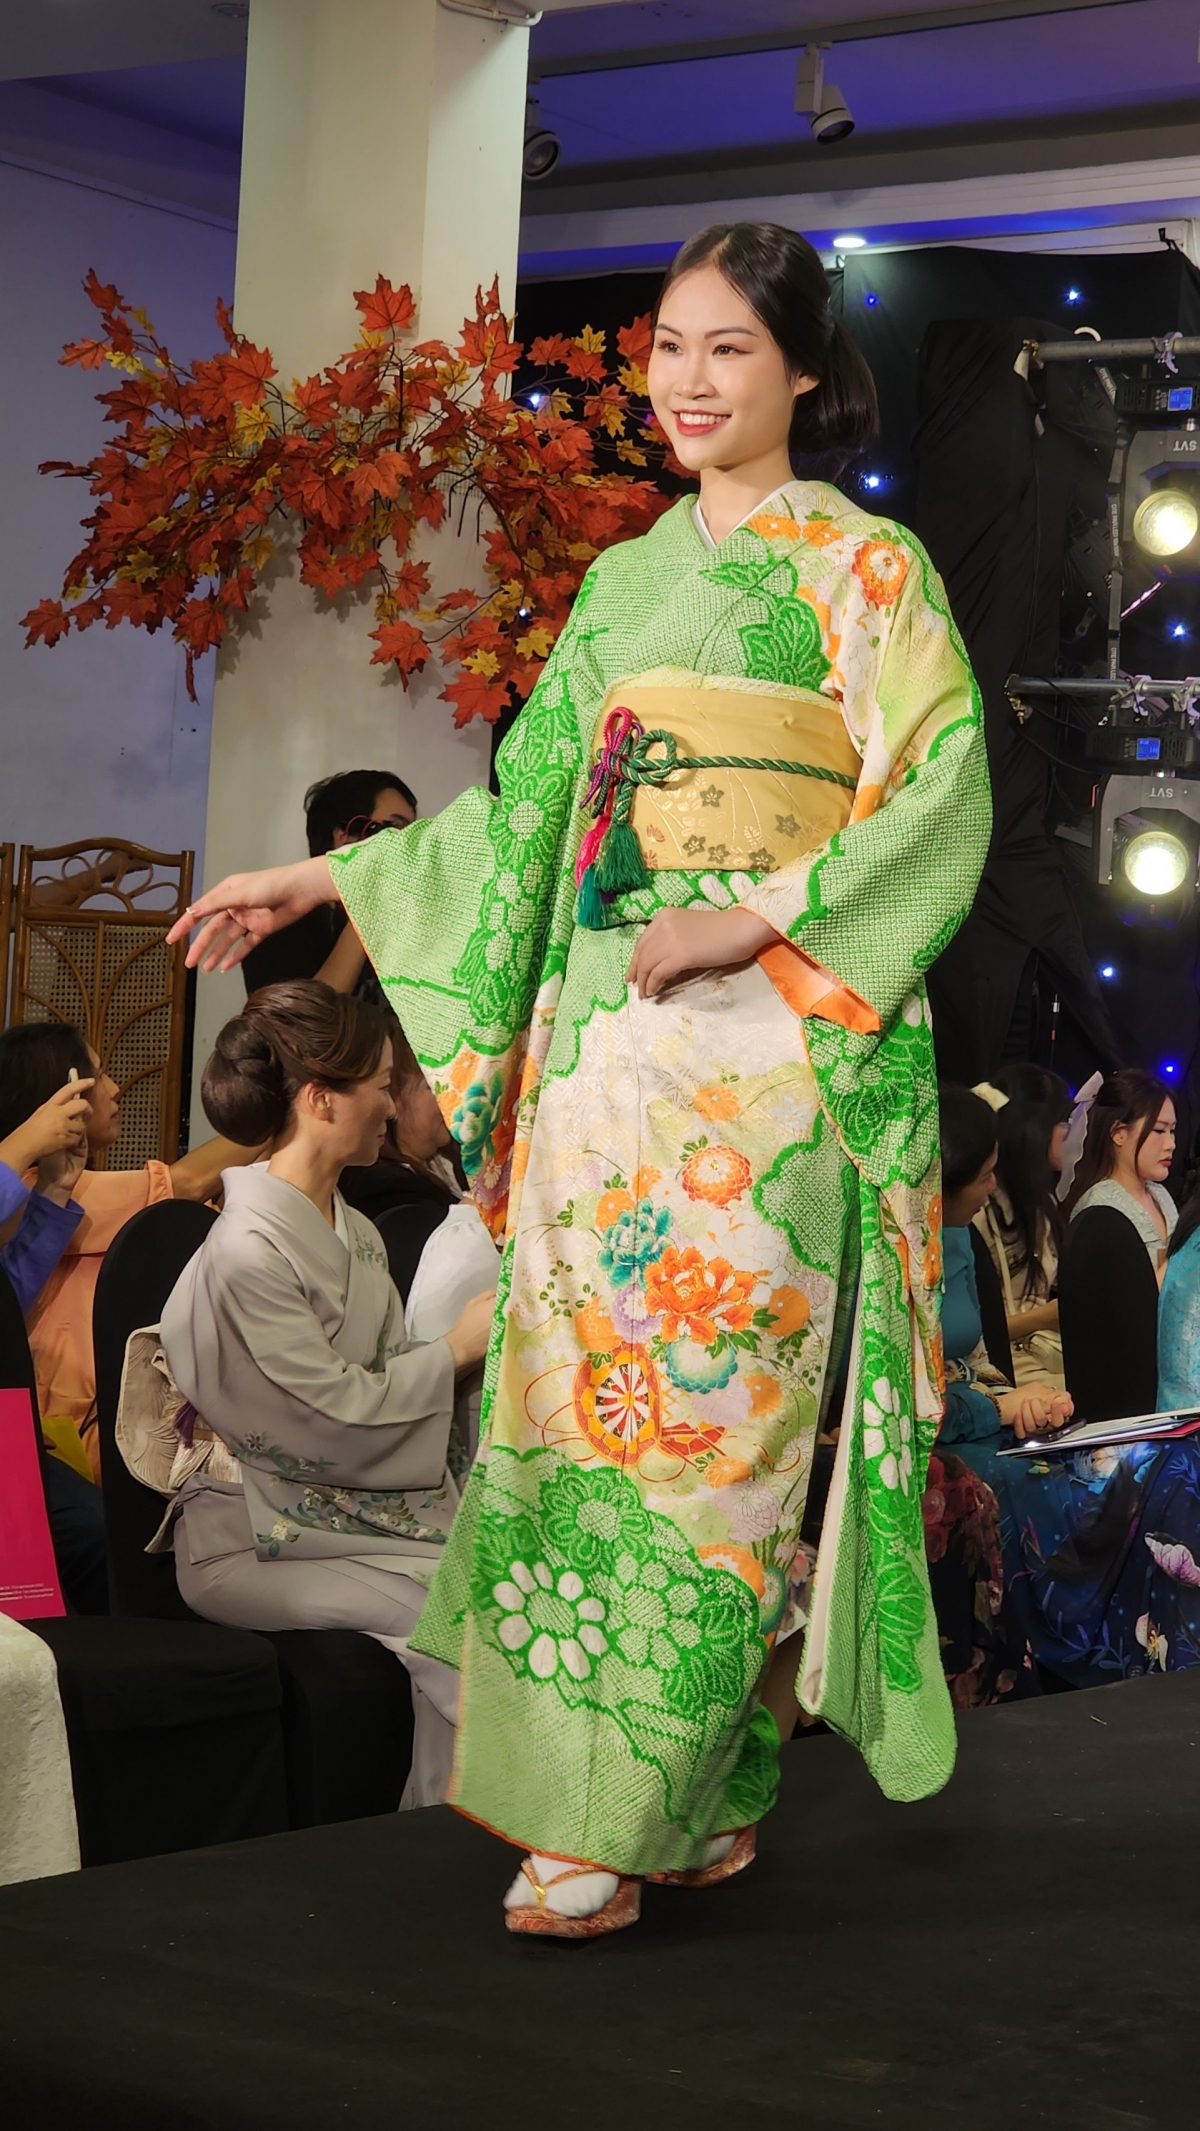 kimono-ao dai fashion show highlights vietnam-japan friendship picture 6